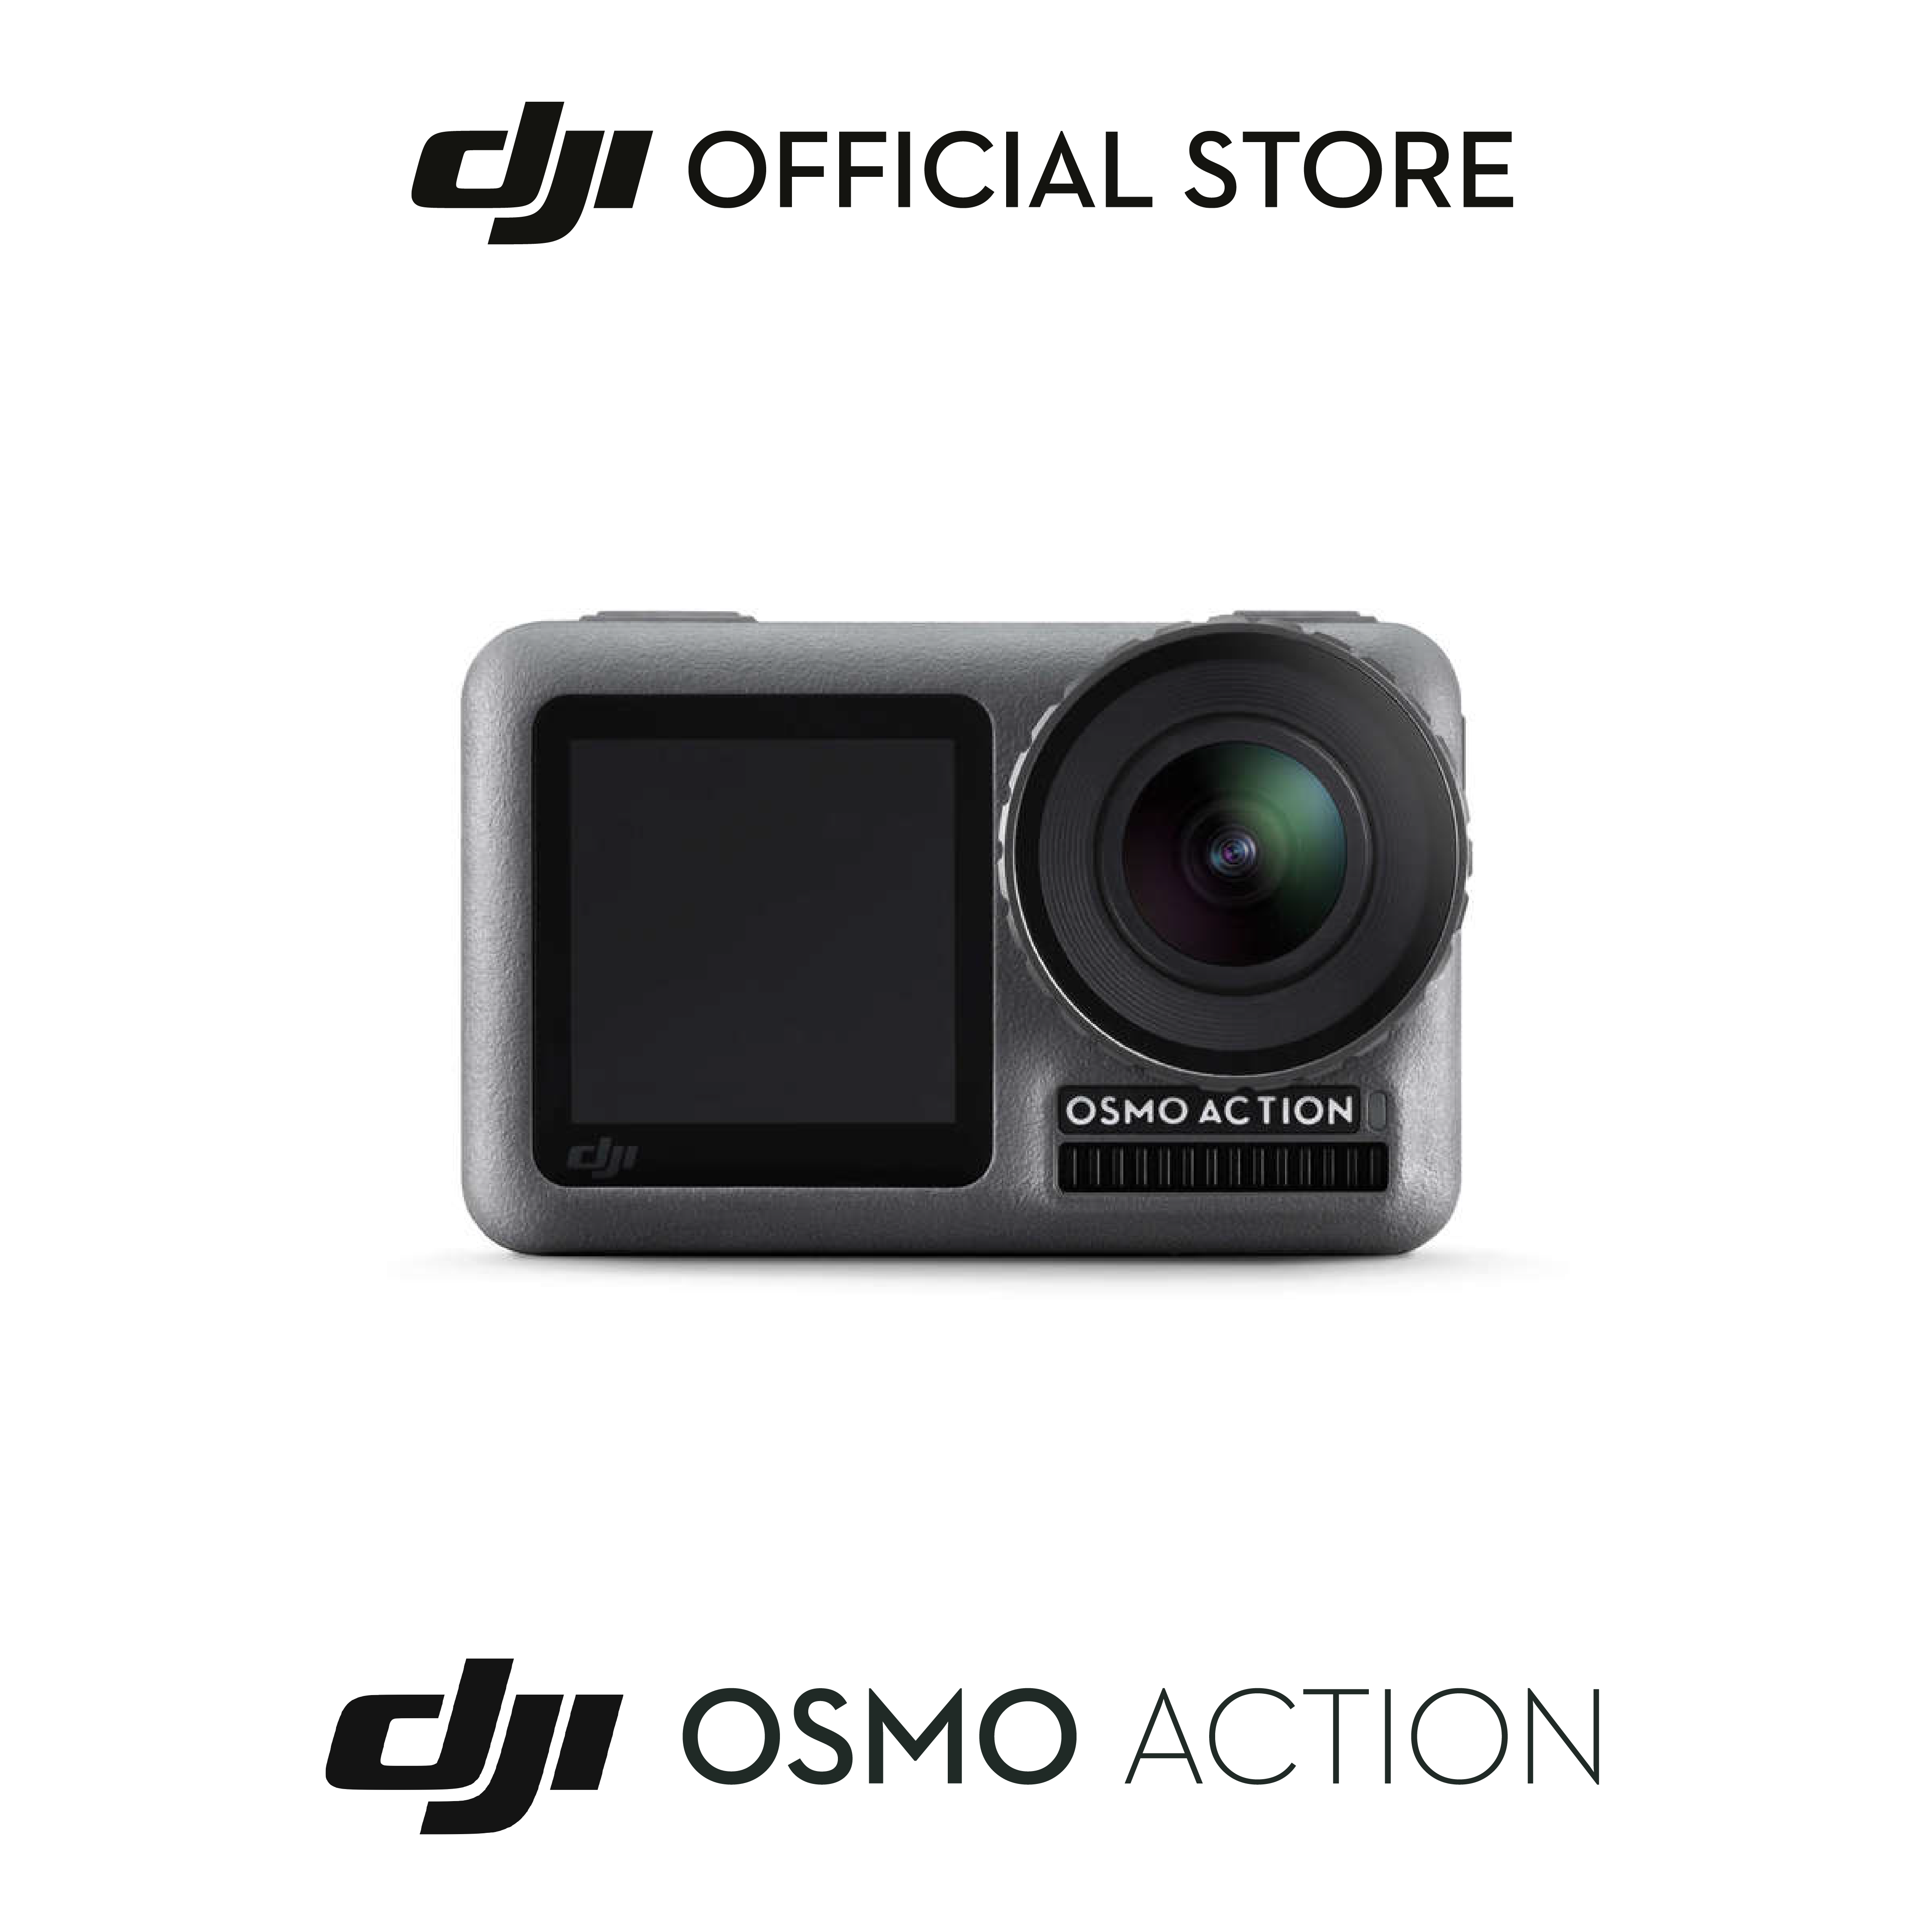 เกี่ยวกับสินค้า DJI OSMO ACTION และ ACTION 2 ออสโม เเอคชั่น เเคม 2หน้าจอหน้าและหลัง เก็บทุกโมเมนต์ ดำน้ำได้ กล้องชัด4K บันทึกภาพไม่ส